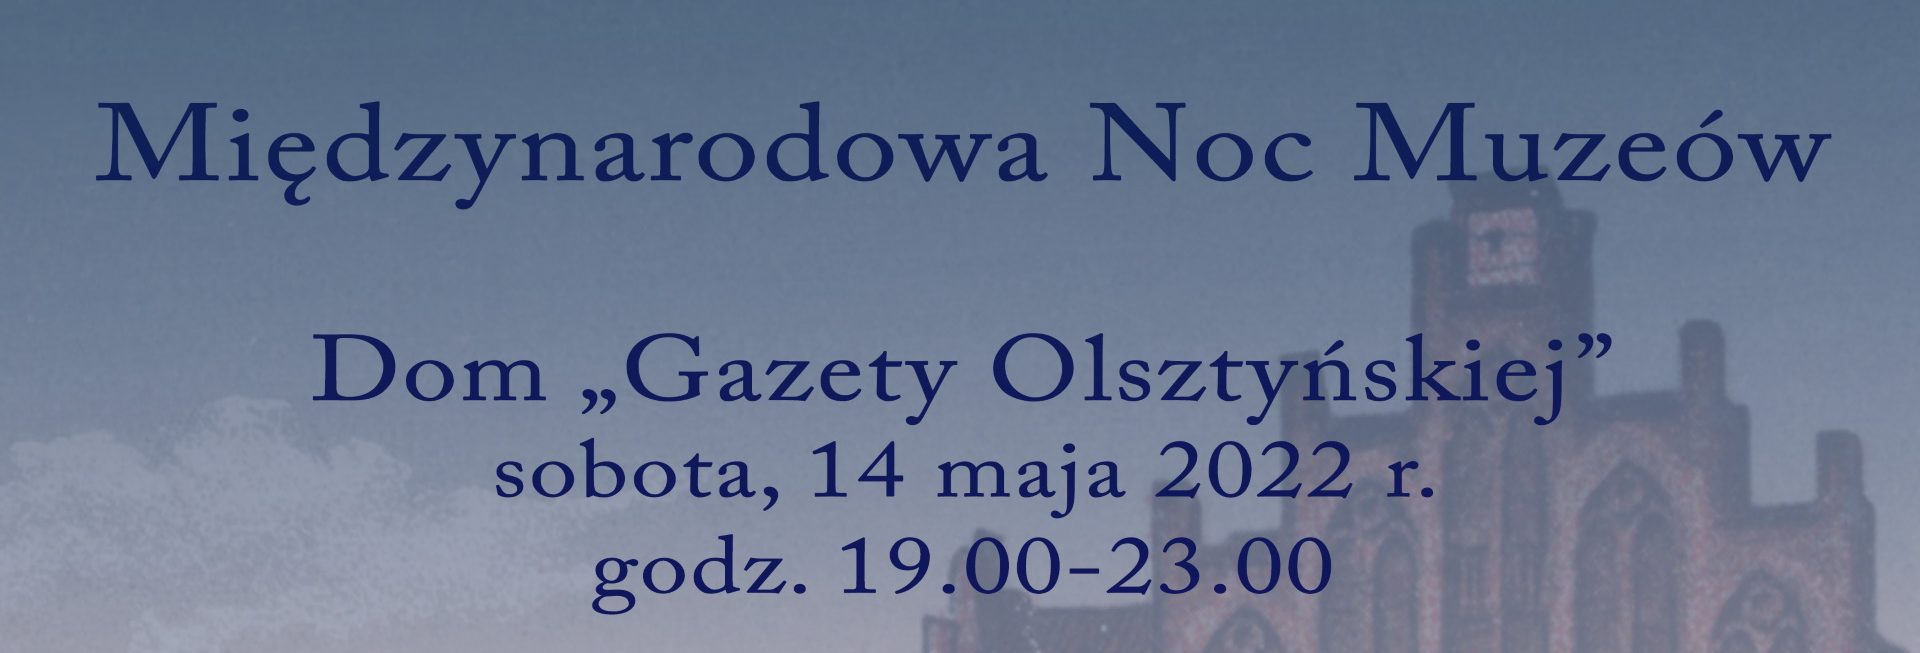 Plakat graficzny zapraszający do Olsztyna na Międzynarodową Noc Muzeów 2022 w Domu Gazety Olsztyńskiej w Olsztynie.